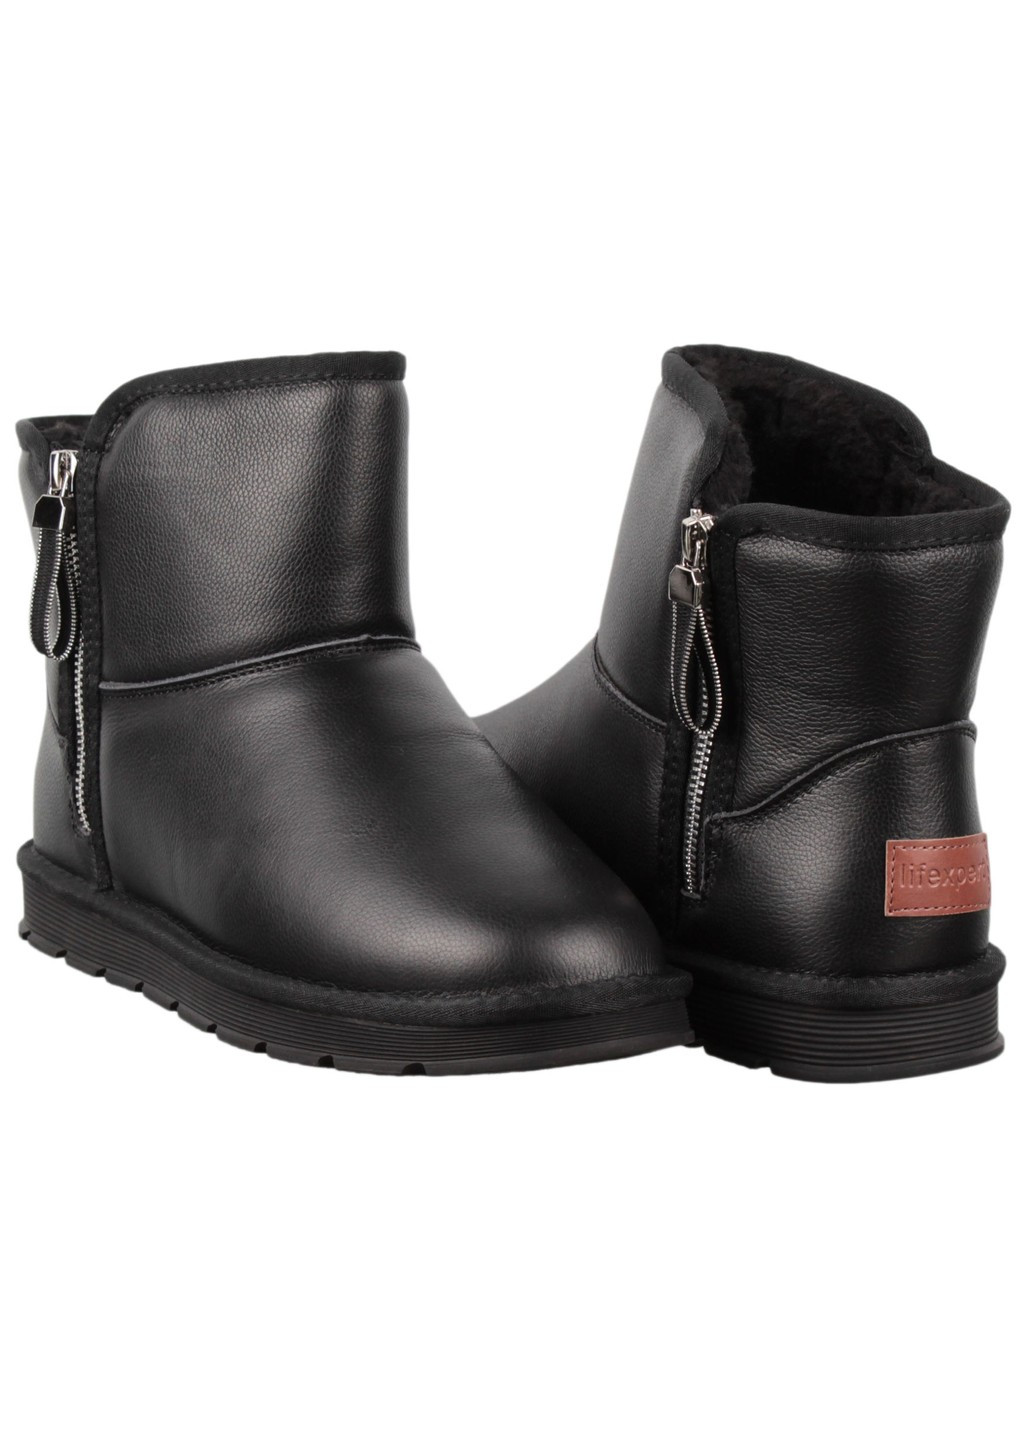 Черные зимние мужские ботинки 198740 Lifexpert